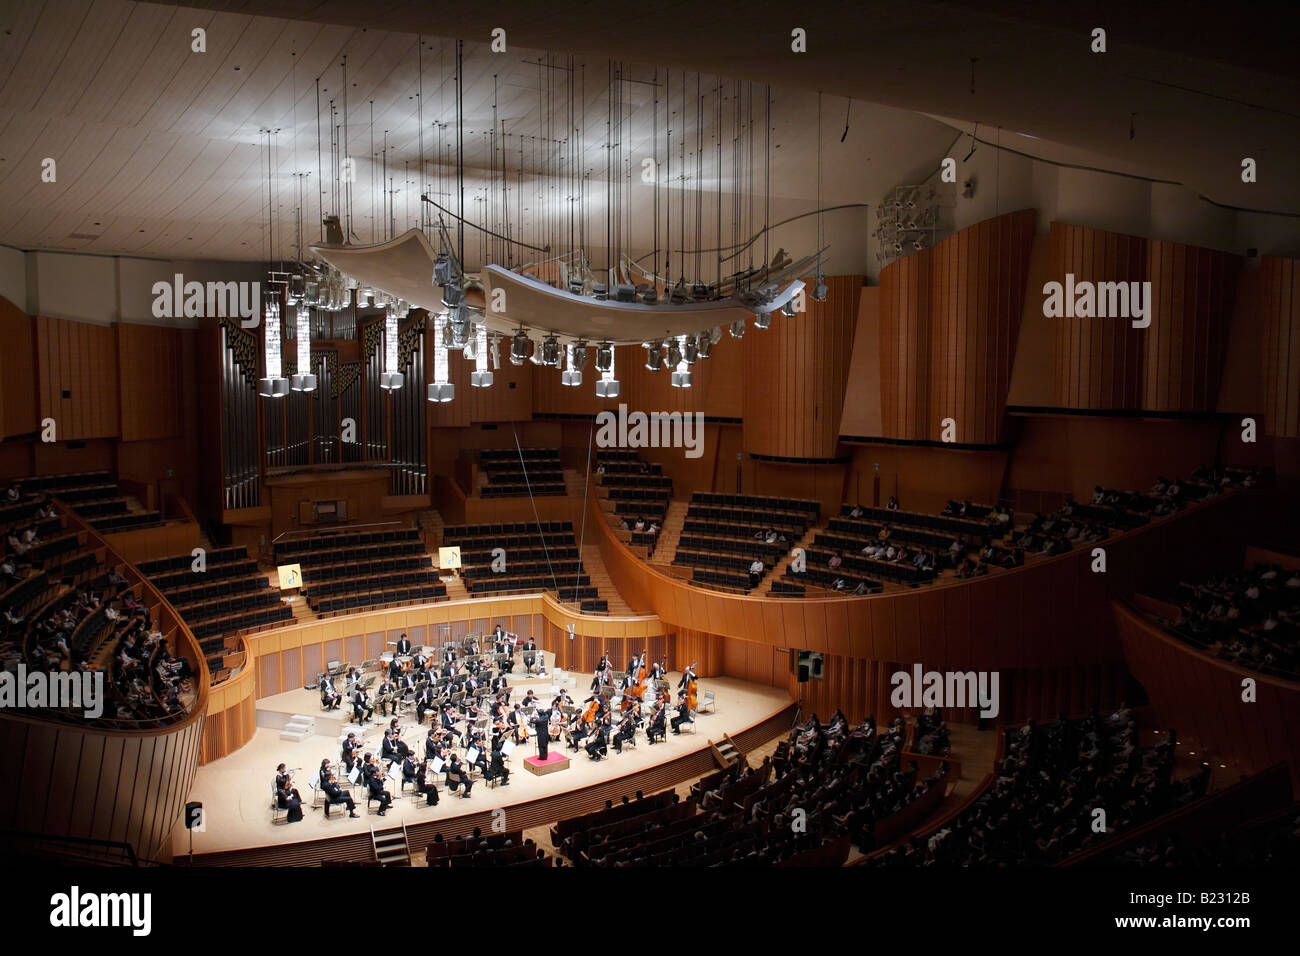 Una orchestra sinfonica presso la Kitara Concert Hall a Sapporo, Giappone. Foto Stock